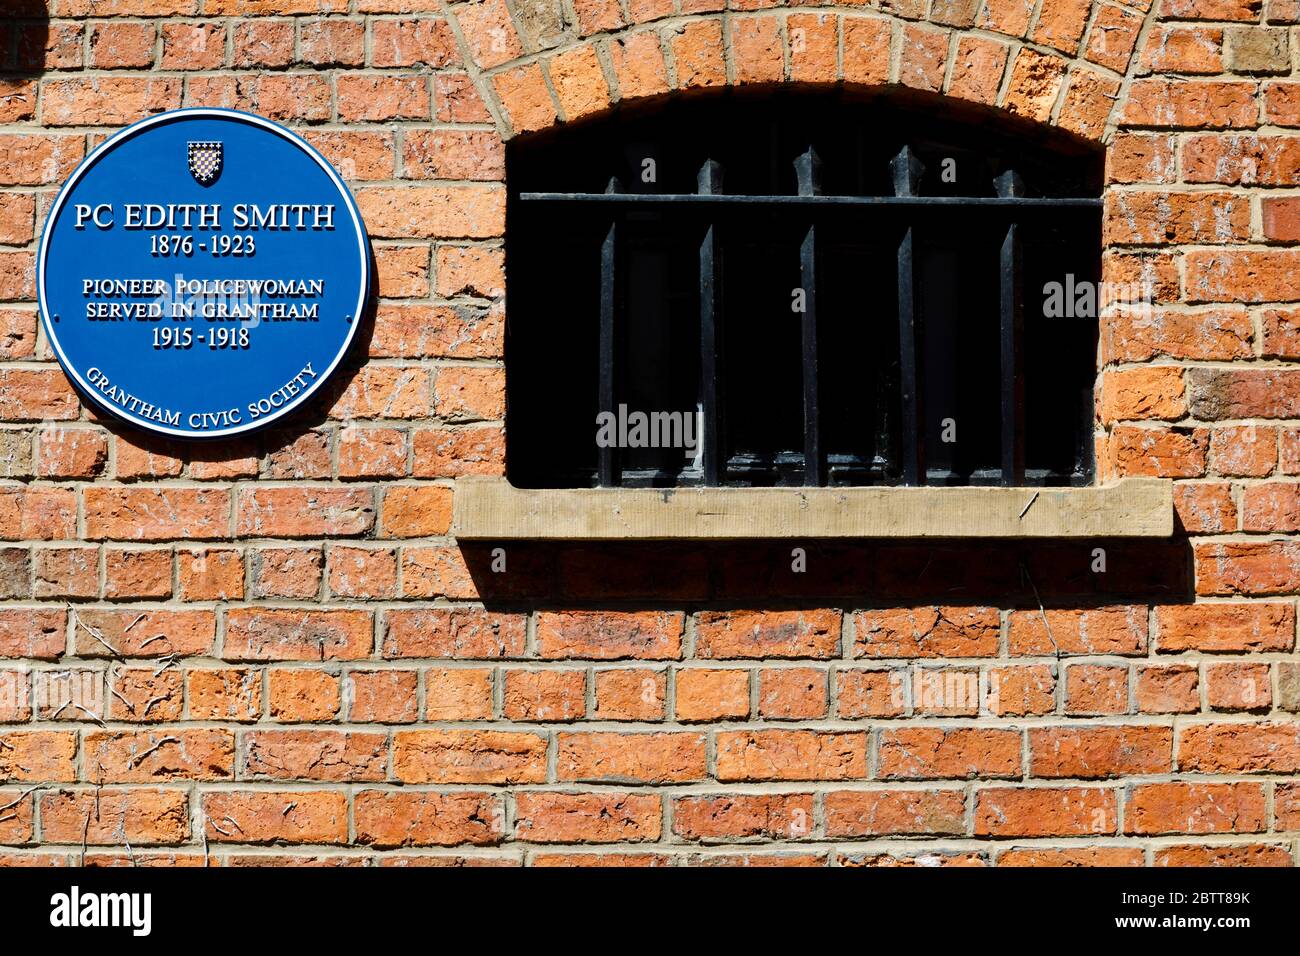 Plaque bleue à Edith Smith, la première policewoman britannique. Le Guildhall Arts Centre, St peters Hill, Grantham, Lincolnshire, Angleterre. Mai 2020 Banque D'Images